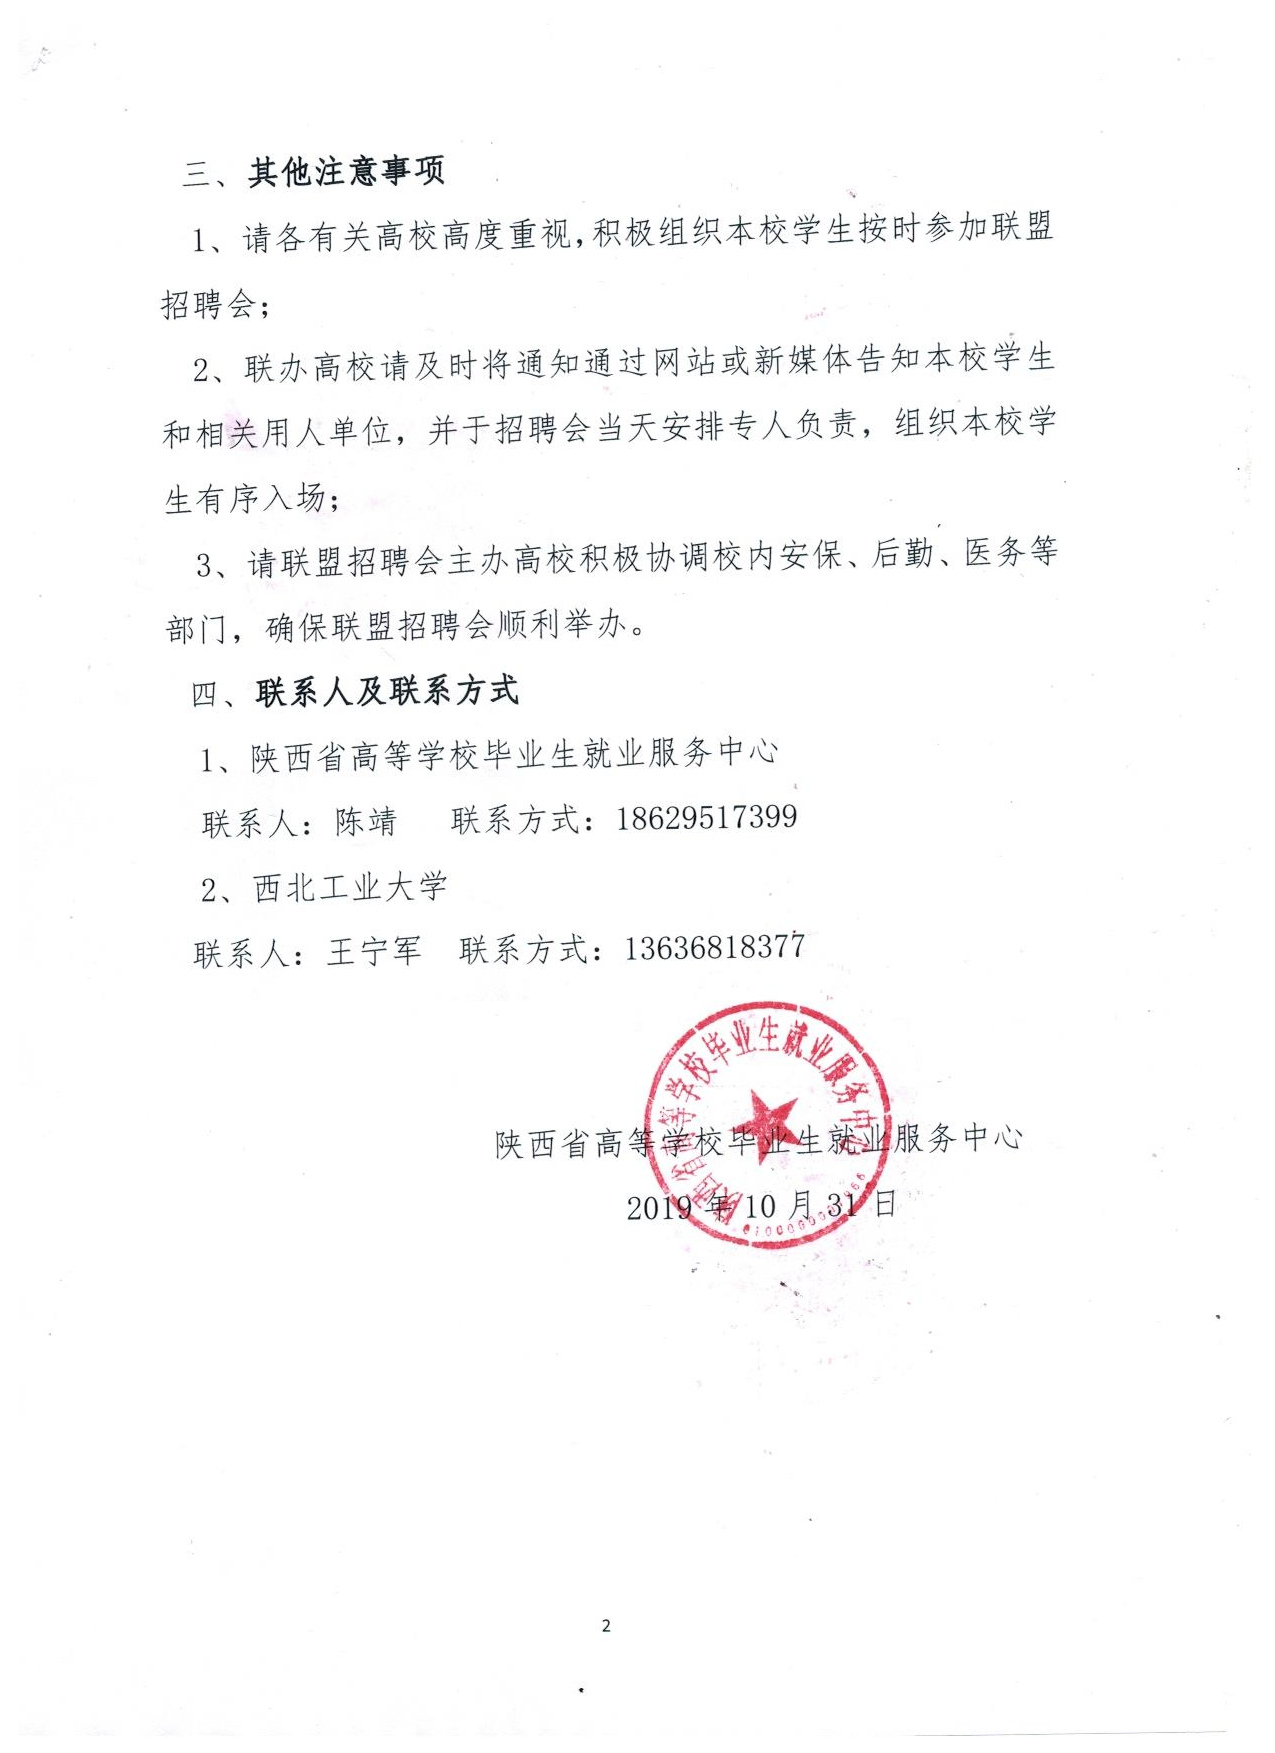 关于举办陕西省理工综合类联盟招聘会的通知（2）.jpg